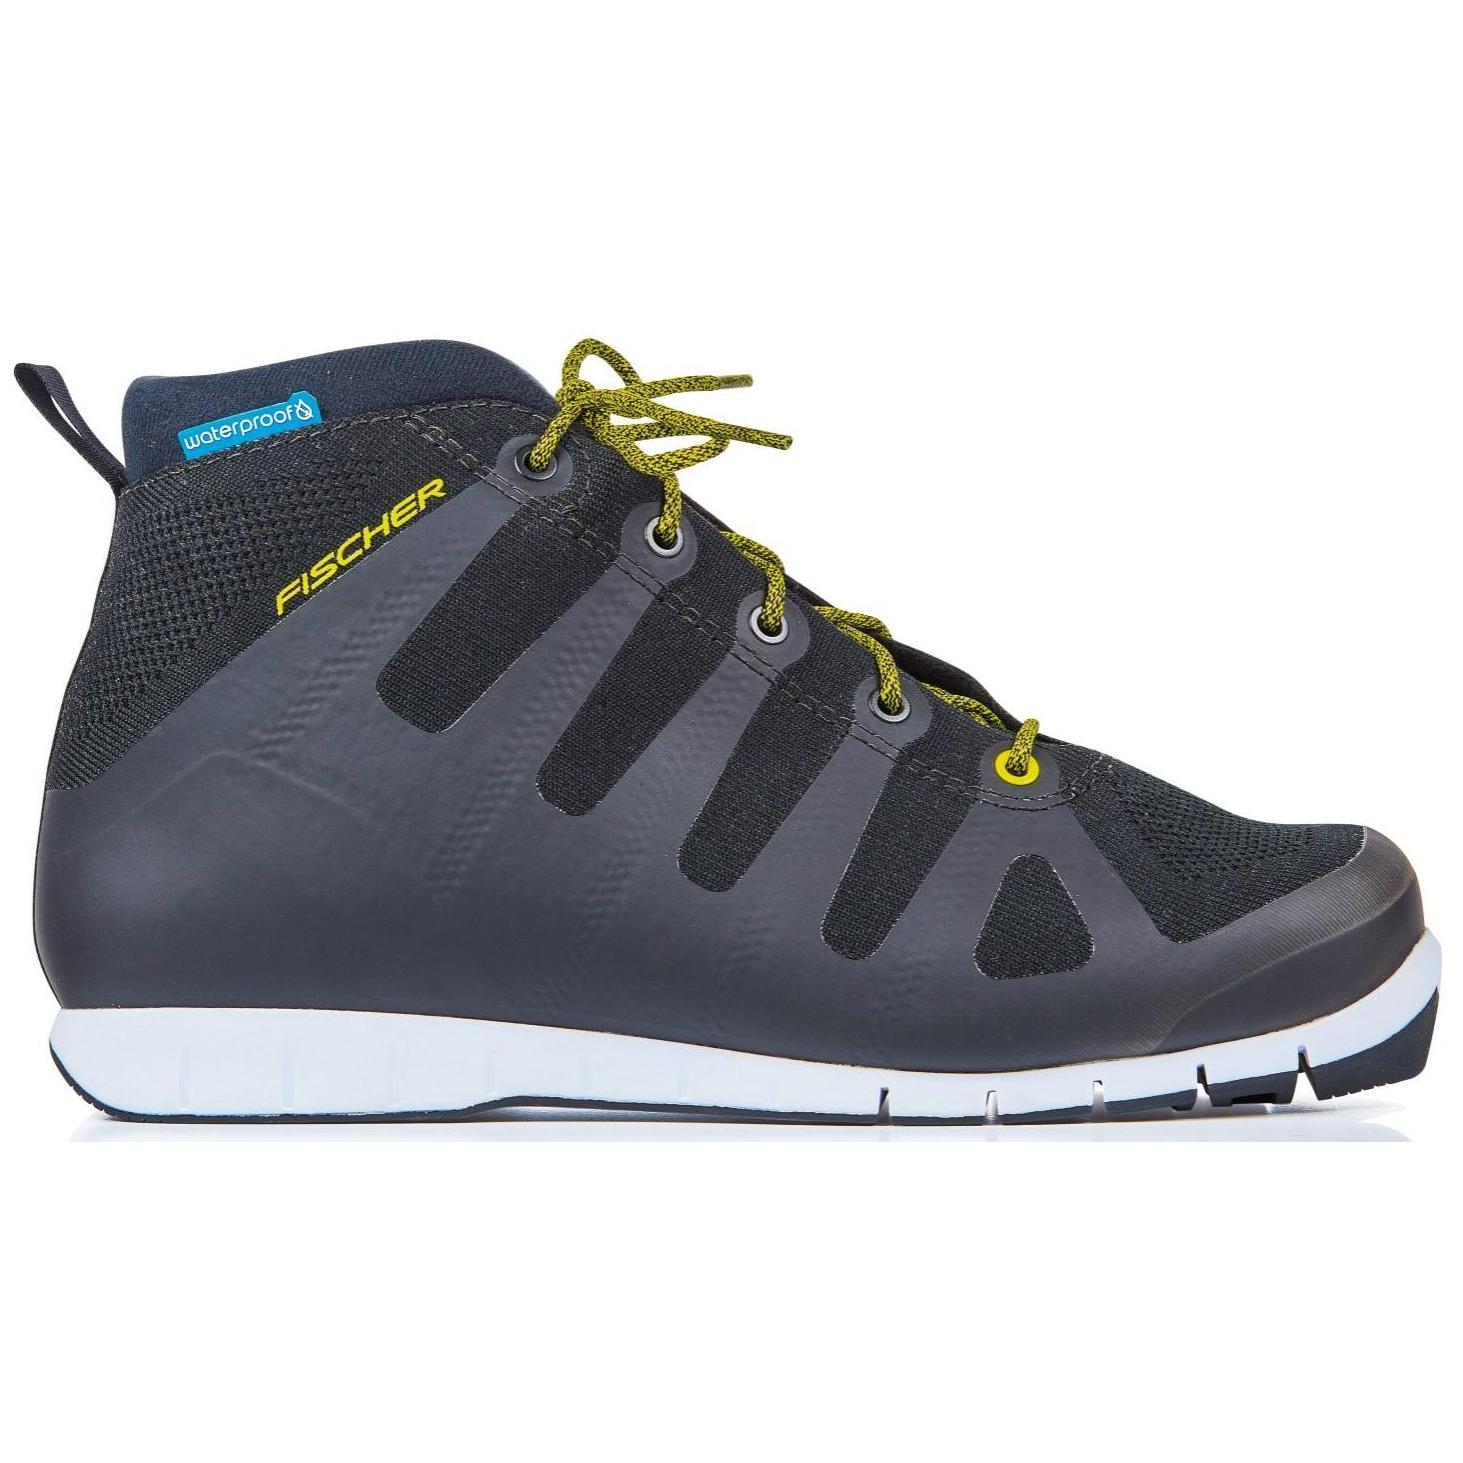 Ботинки для беговых лыж Fischer Urban Sport 2020, black/yellow, 44